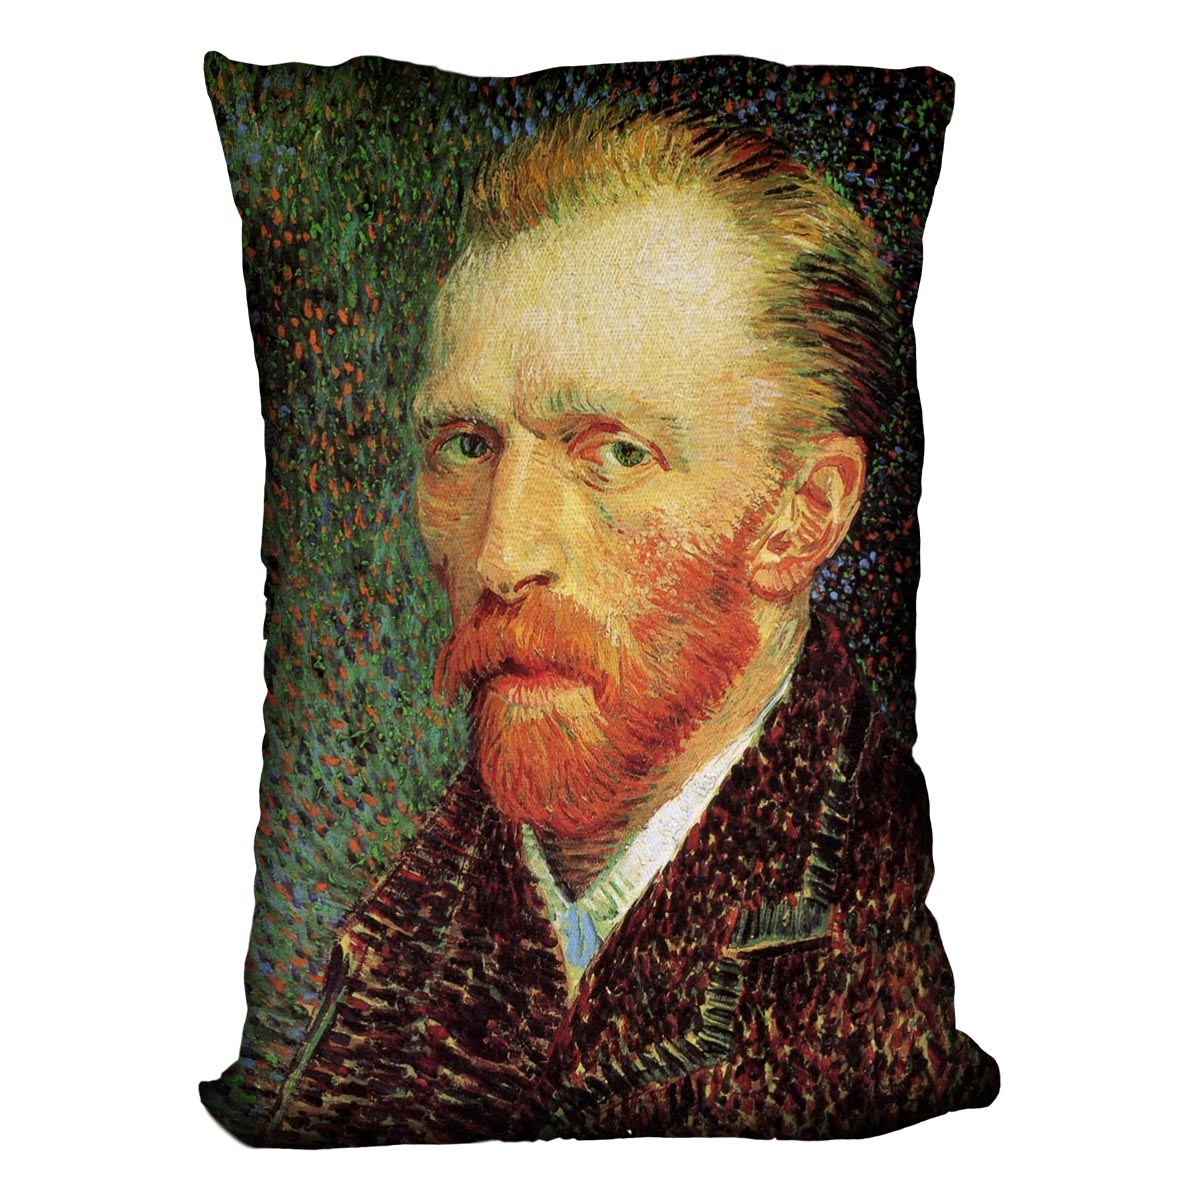 Self-Portrait 3 by Van Gogh Cushion